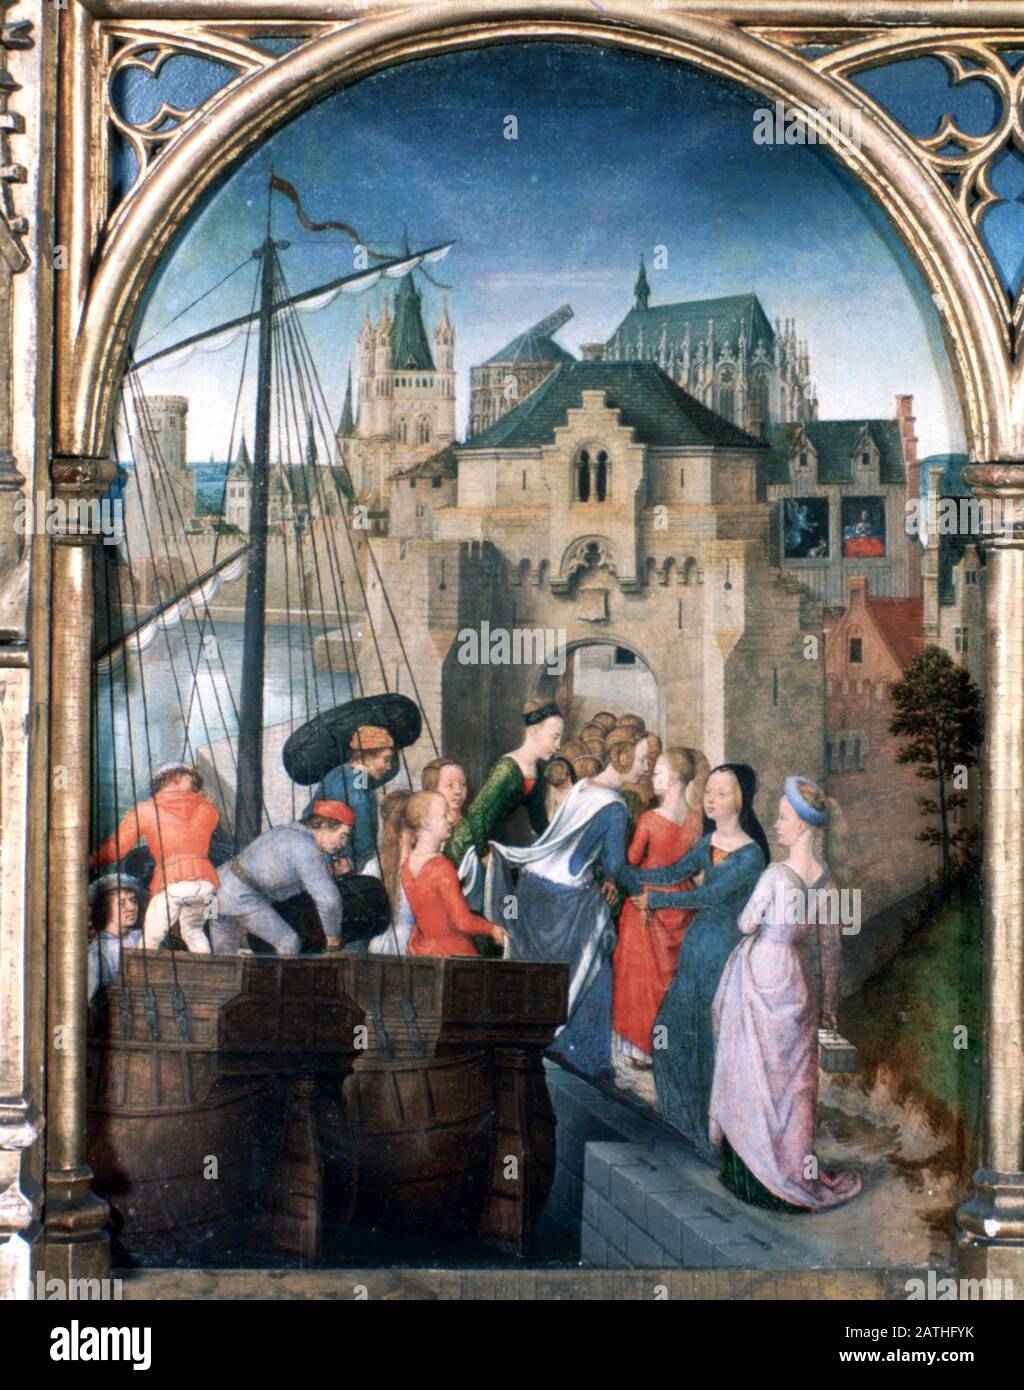 Sanctuaire St Ursula, Arrivée À Cologne, 1489. Le Reliquaire De St Ursula, Musée Memling, Sint-Janshospitaal, Bruges. Banque D'Images